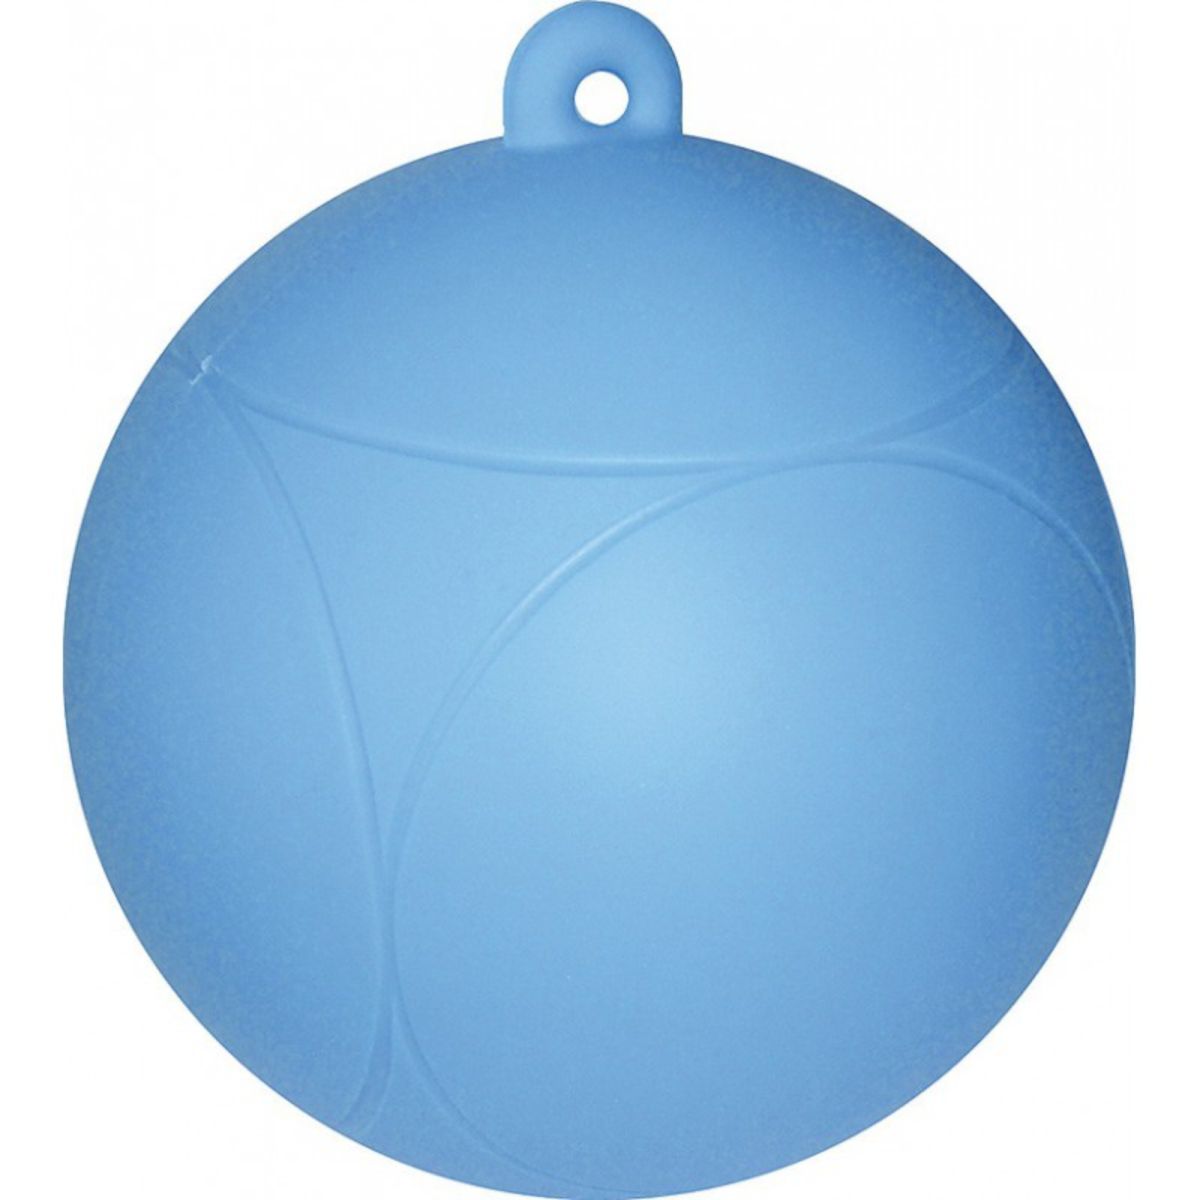 Hippotonic Spielzeug Bal Blau